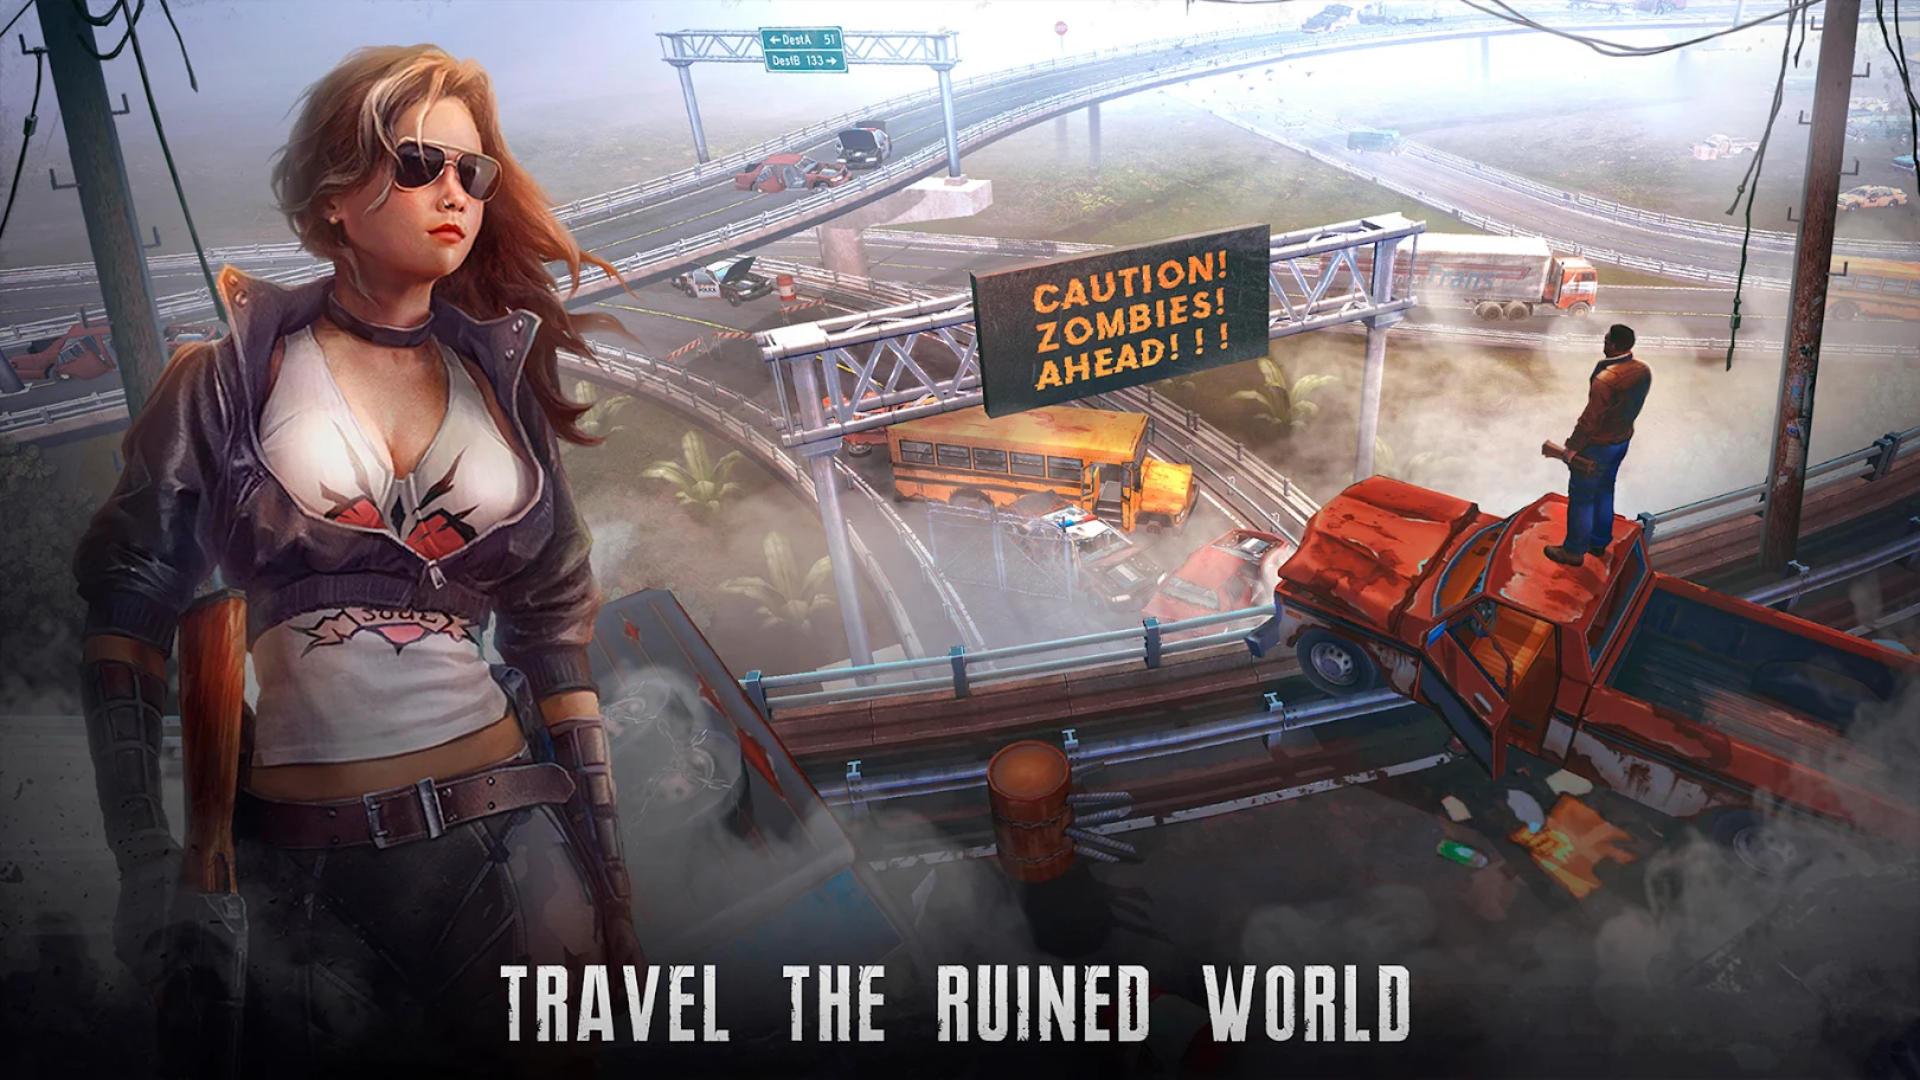 Bästa överlevnadsspel på mobil: Live or Die. Bilden visar en bild av en dam i solglasögon nära en övergiven motorväg, med texten